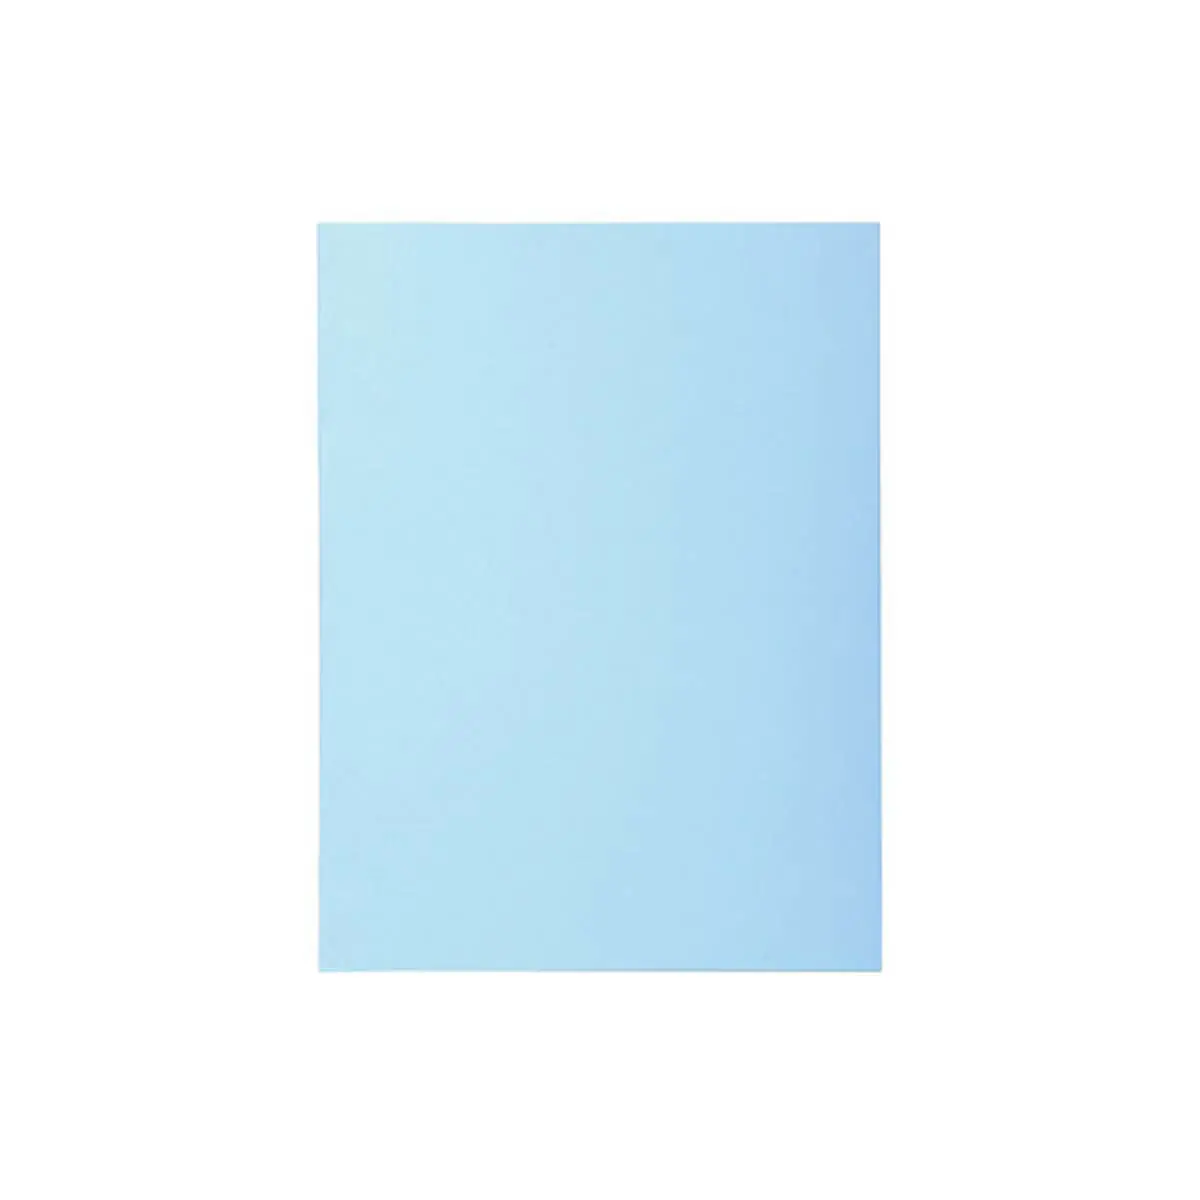 Paquet 100 chemises SUPER 160 - 24x32cm - Bleu clair - EXACOMPTA photo du produit